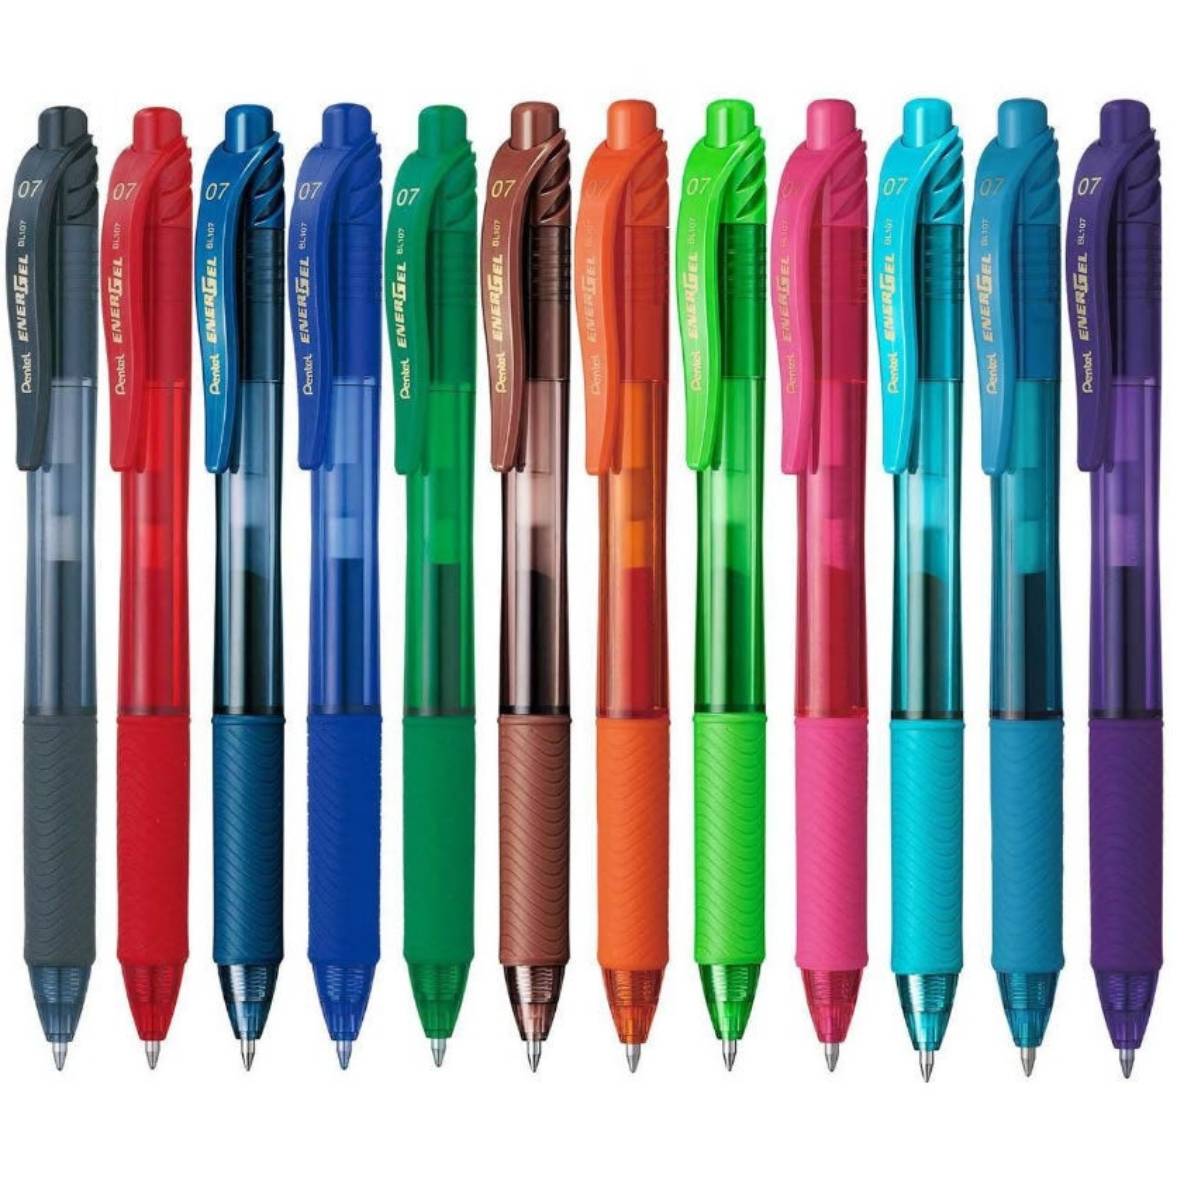 Stylo à bille apprentissage Twist bleu + 1 recharge BIC : le stylo